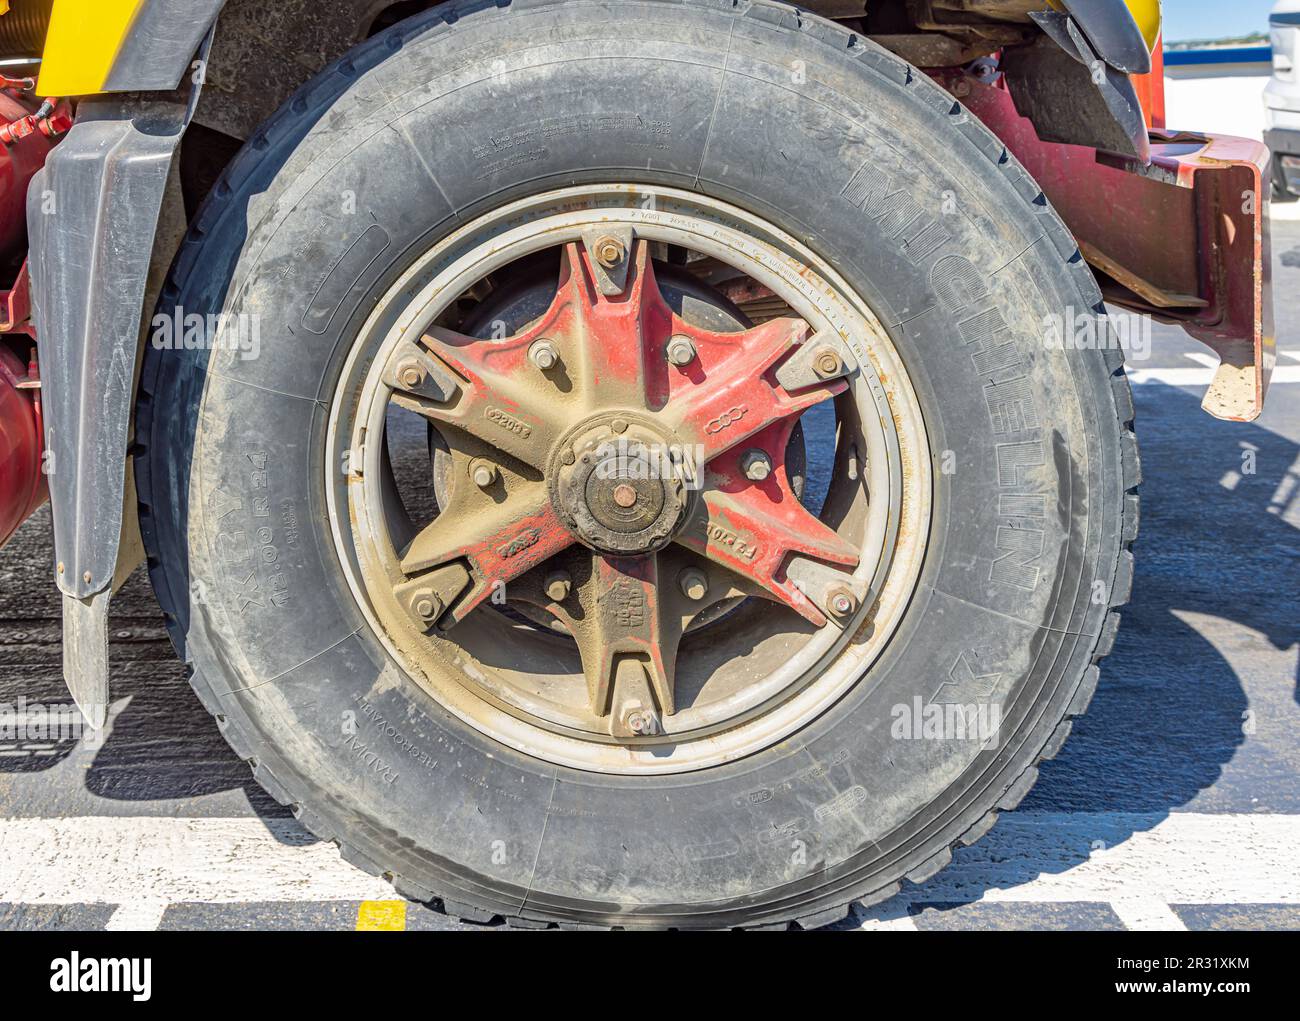 Image détaillée d'un grand pneu de camion sale Banque D'Images